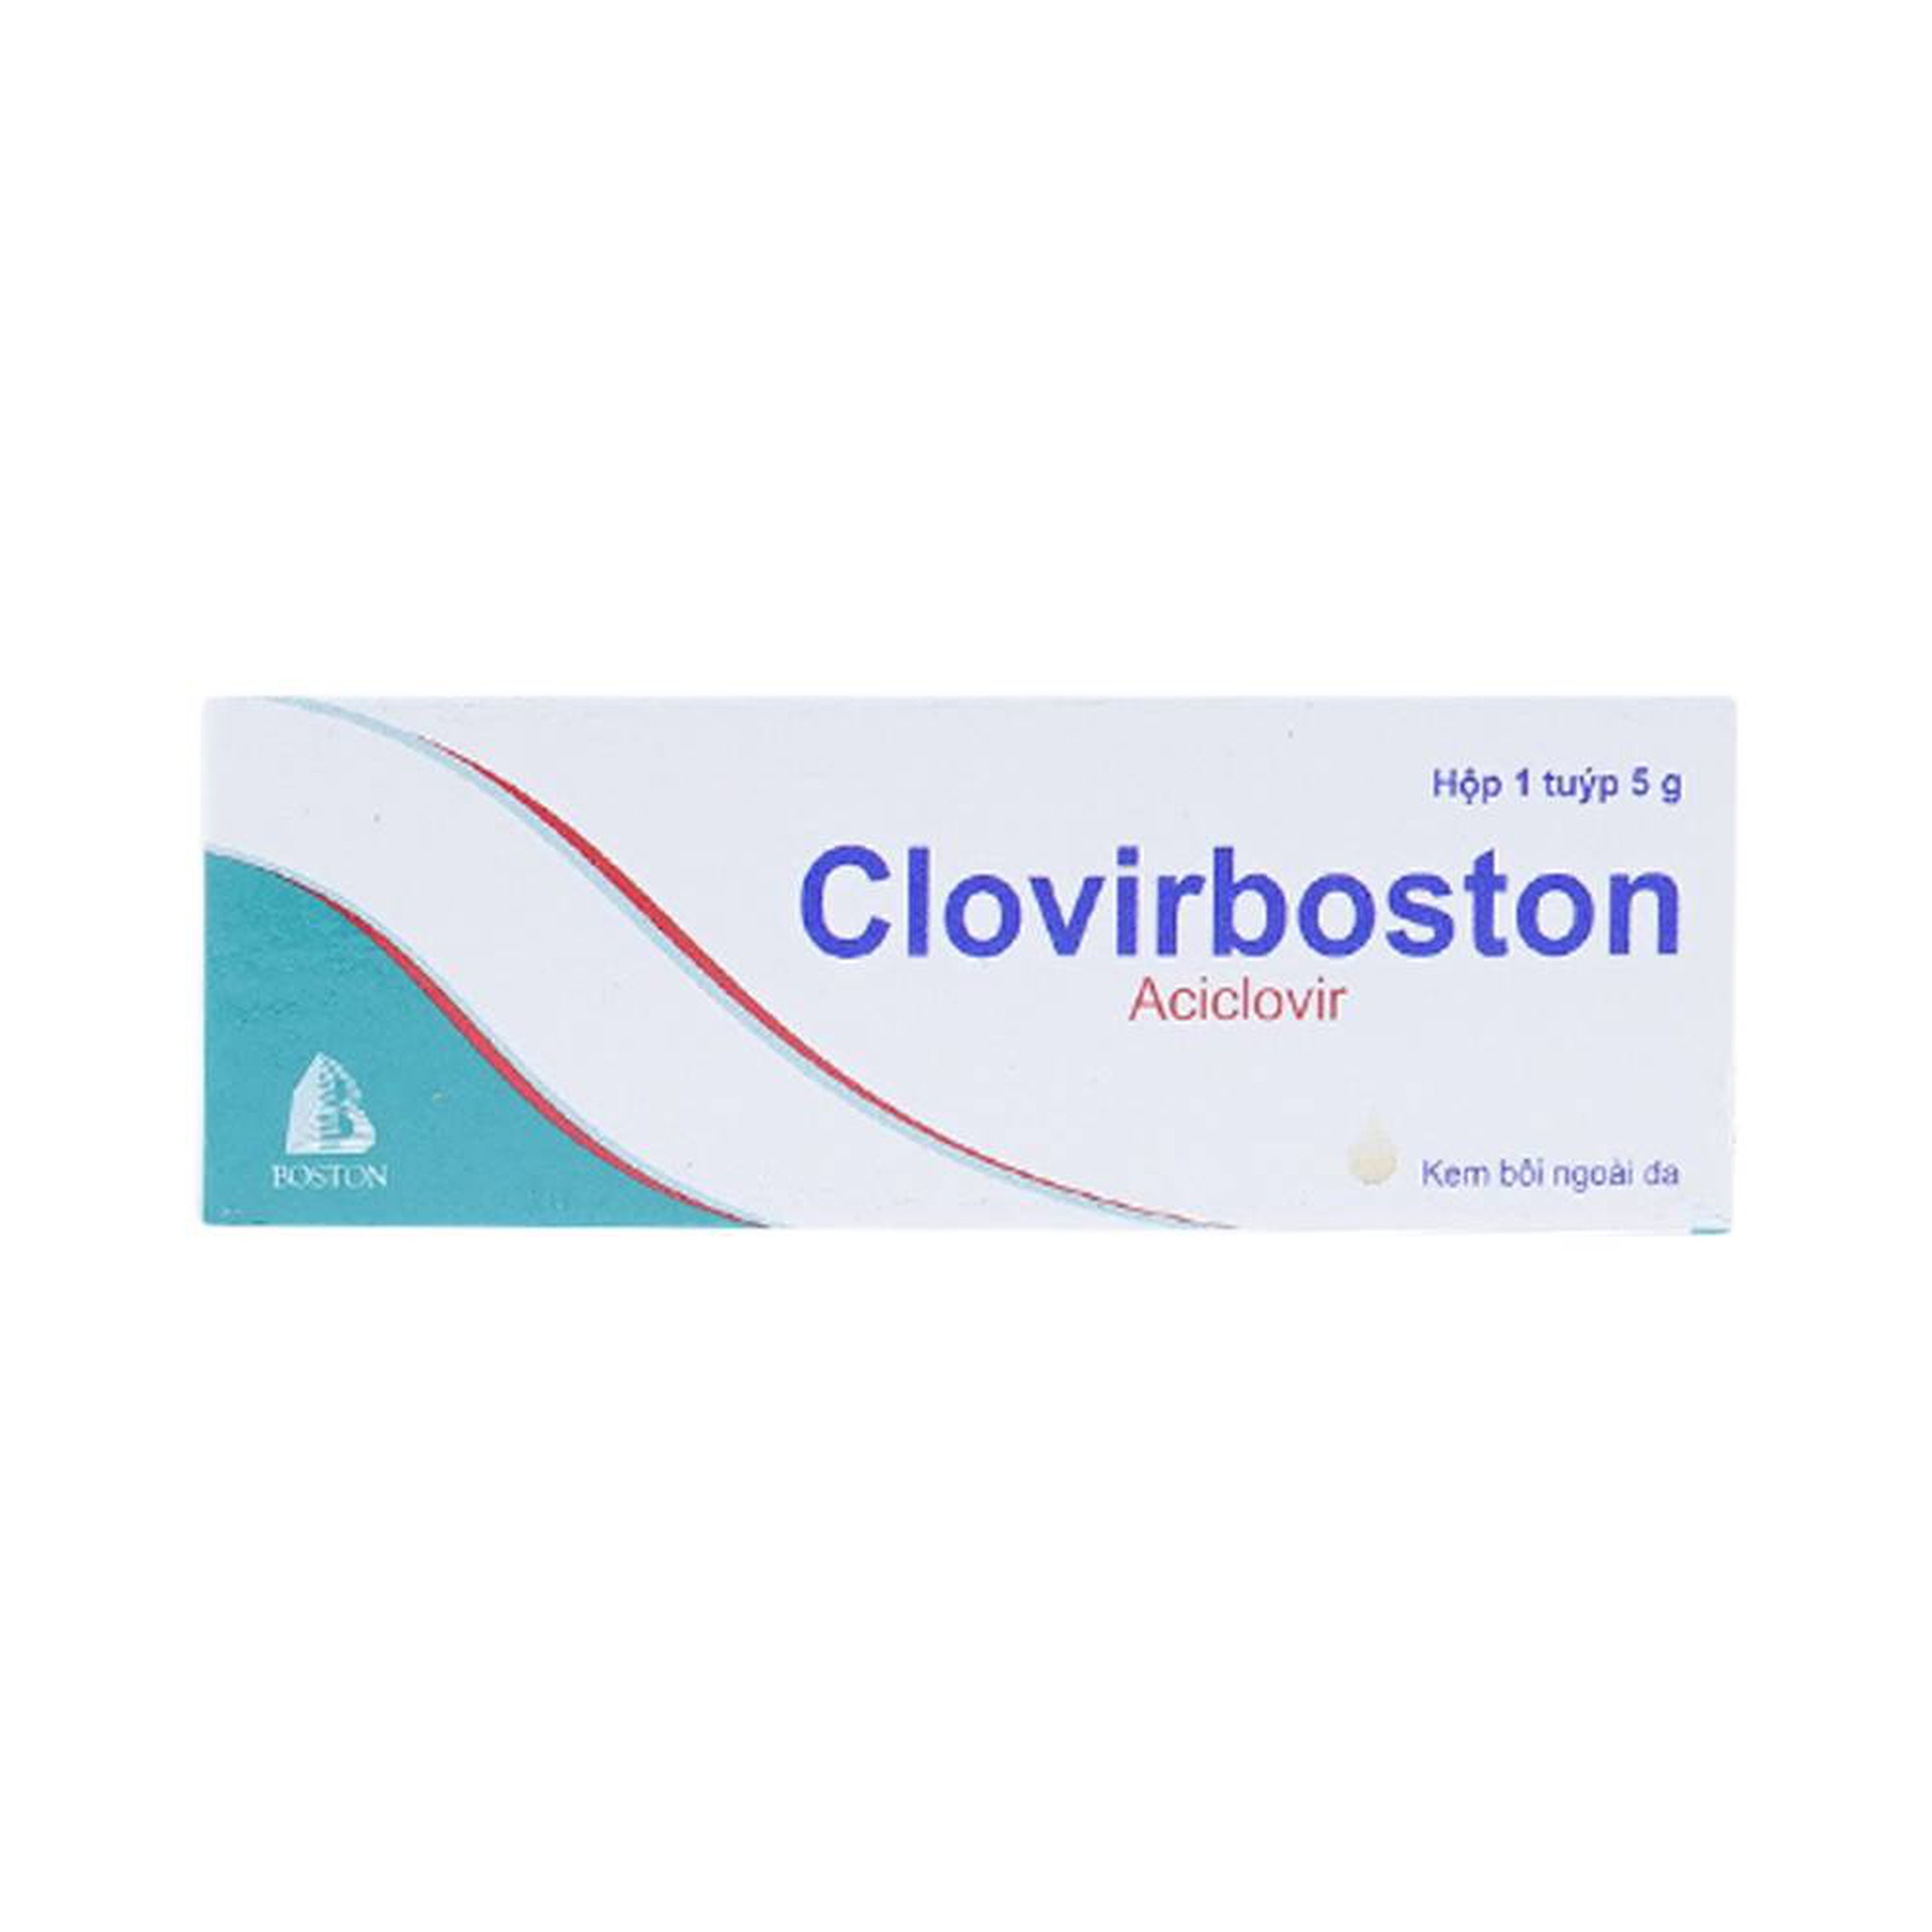 Kem bôi ngoài da Clovirboston điều trị nhiễm Herpes Simplex môi và mặt khởi phát và tái phát (5g)